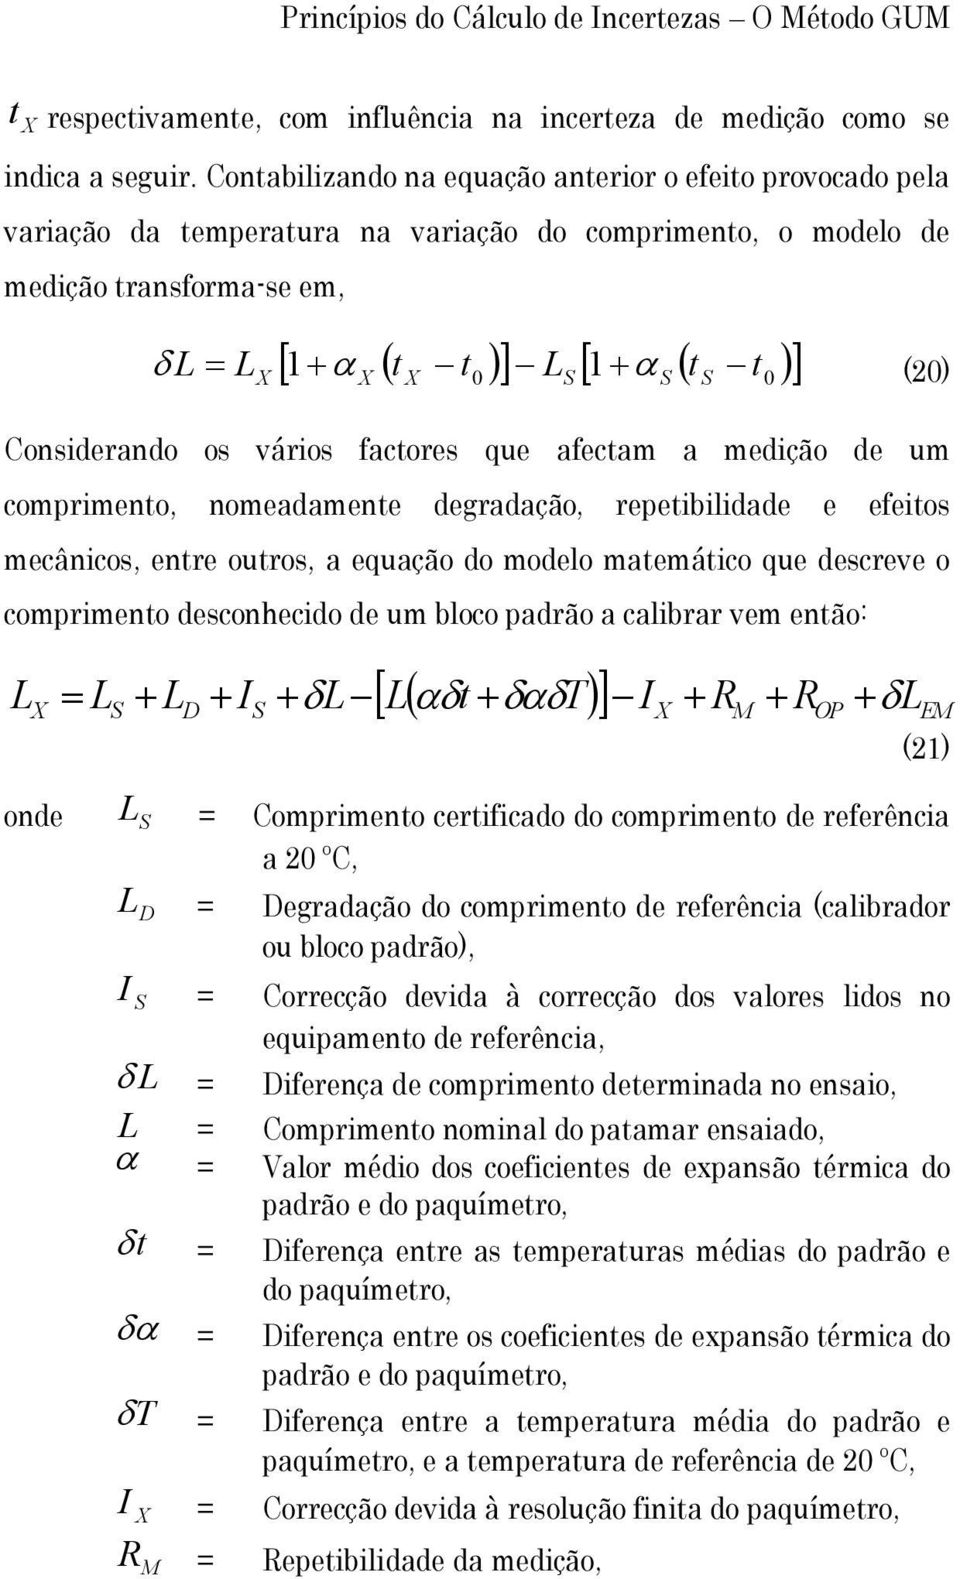 Consderando os város factores que afectam a medção de um comprmento, nomeadamente degradação, repetbldade e efetos mecâncos, entre outros, a equação do modelo matemátco que descreve o comprmento